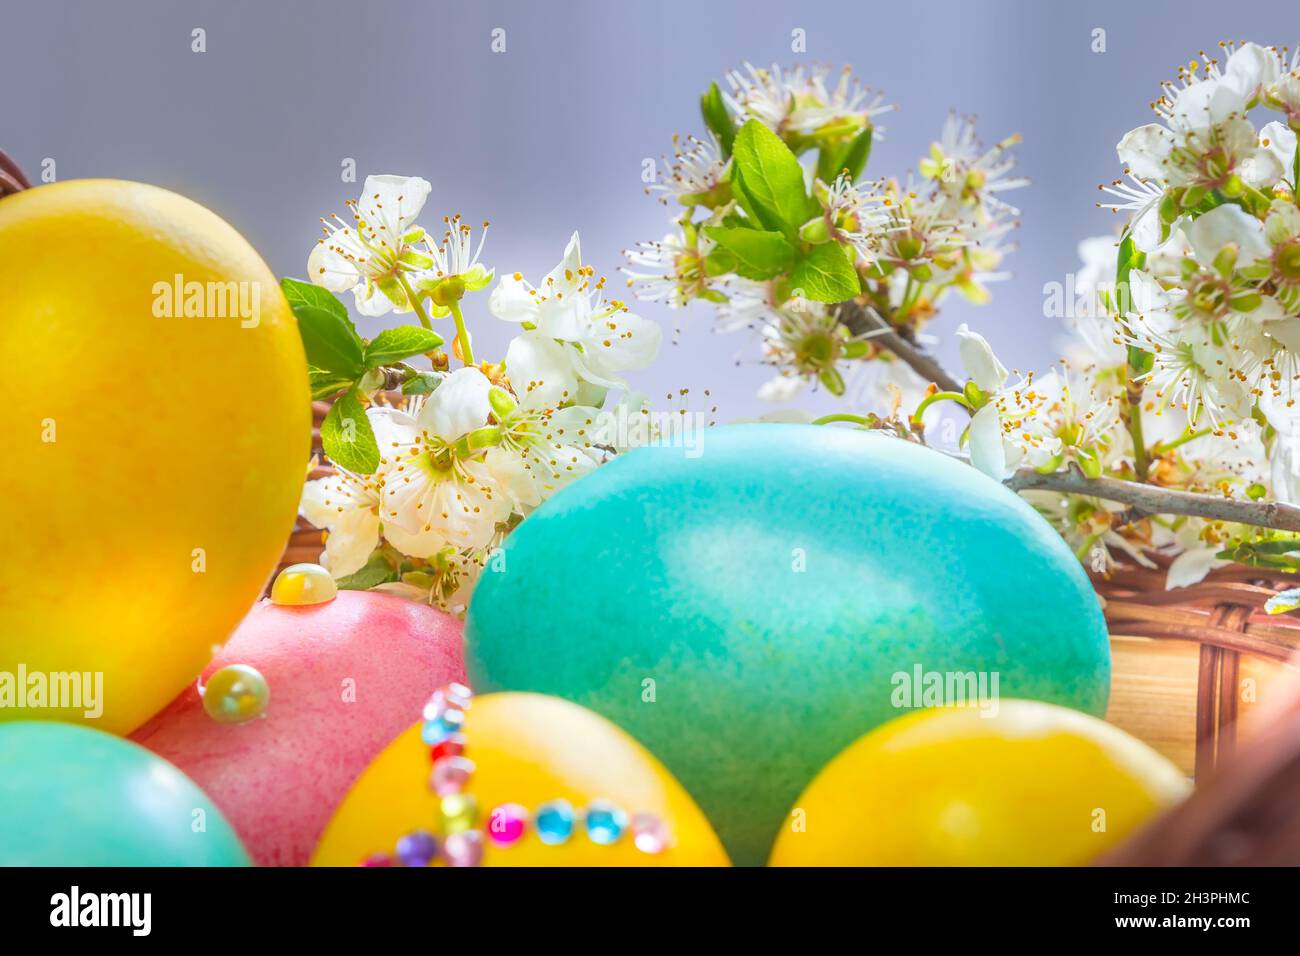 Easter eggs, tree flower branch Stock Photo